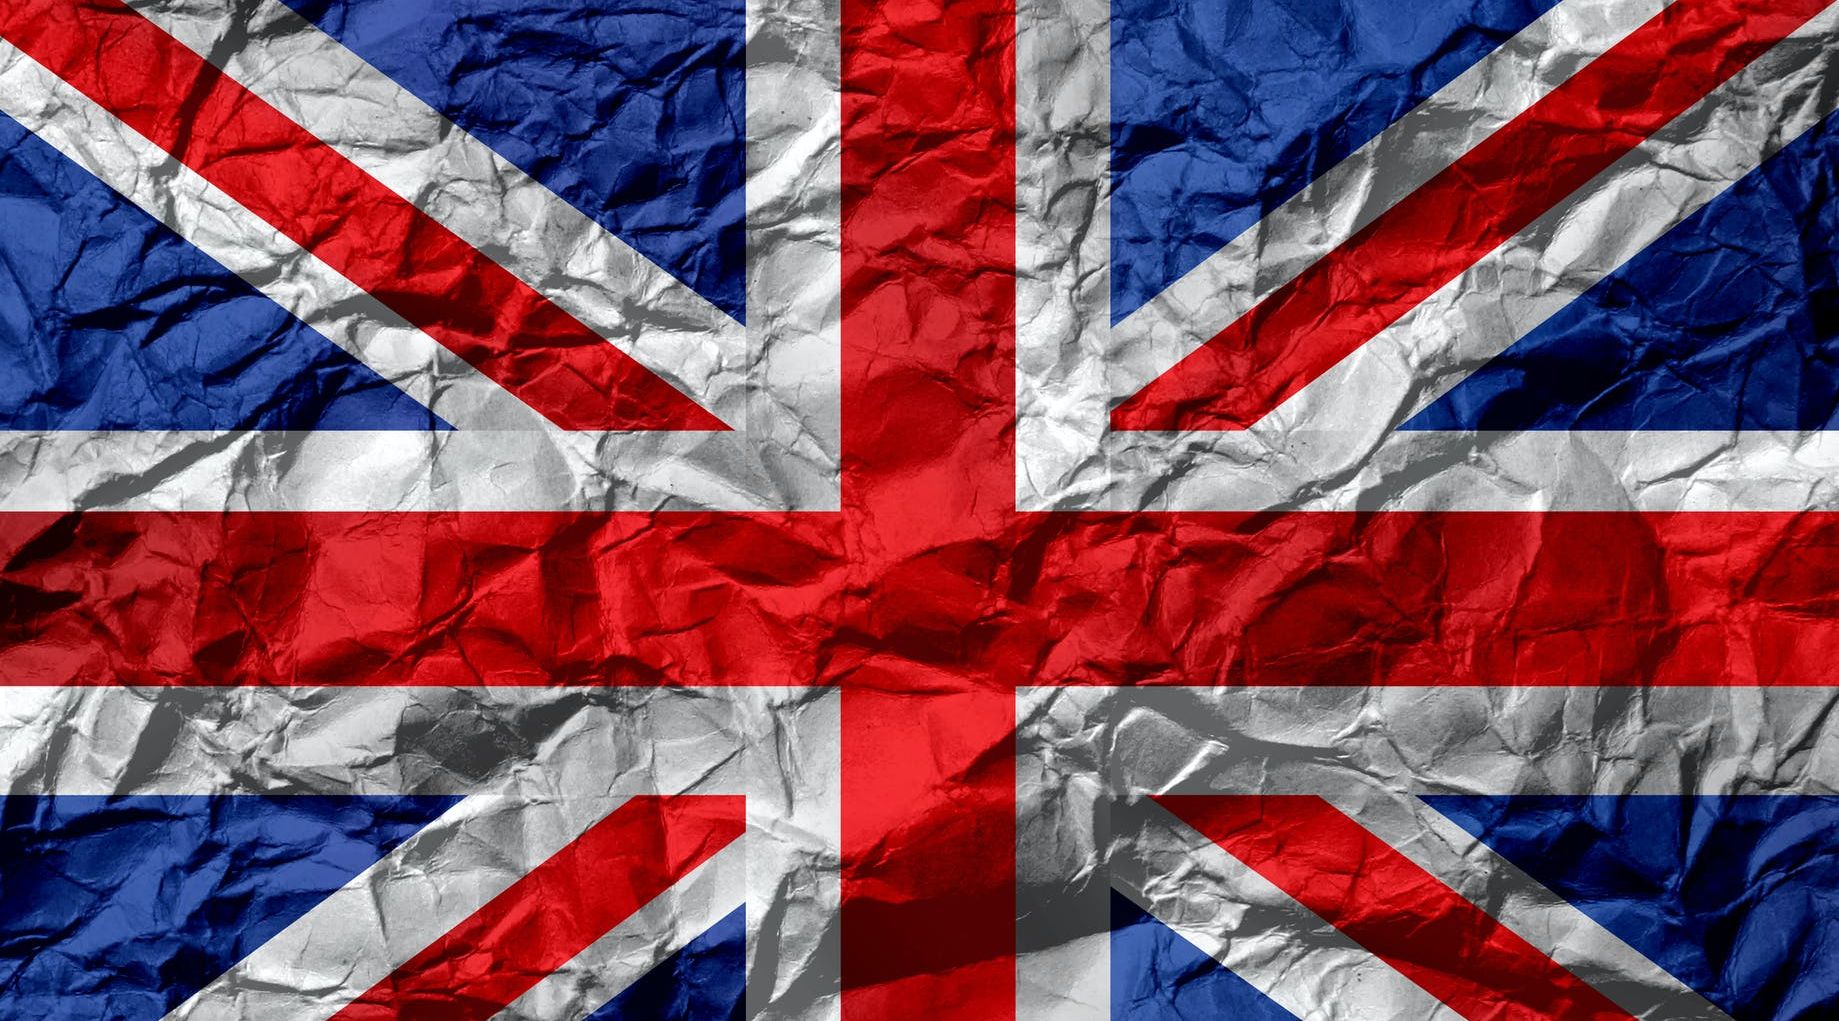 المملكة المتحدة تعلن إزالة 11 دولة من "القائمة الحمراء" للسفر اعتبارًا من يوم الأربعاء